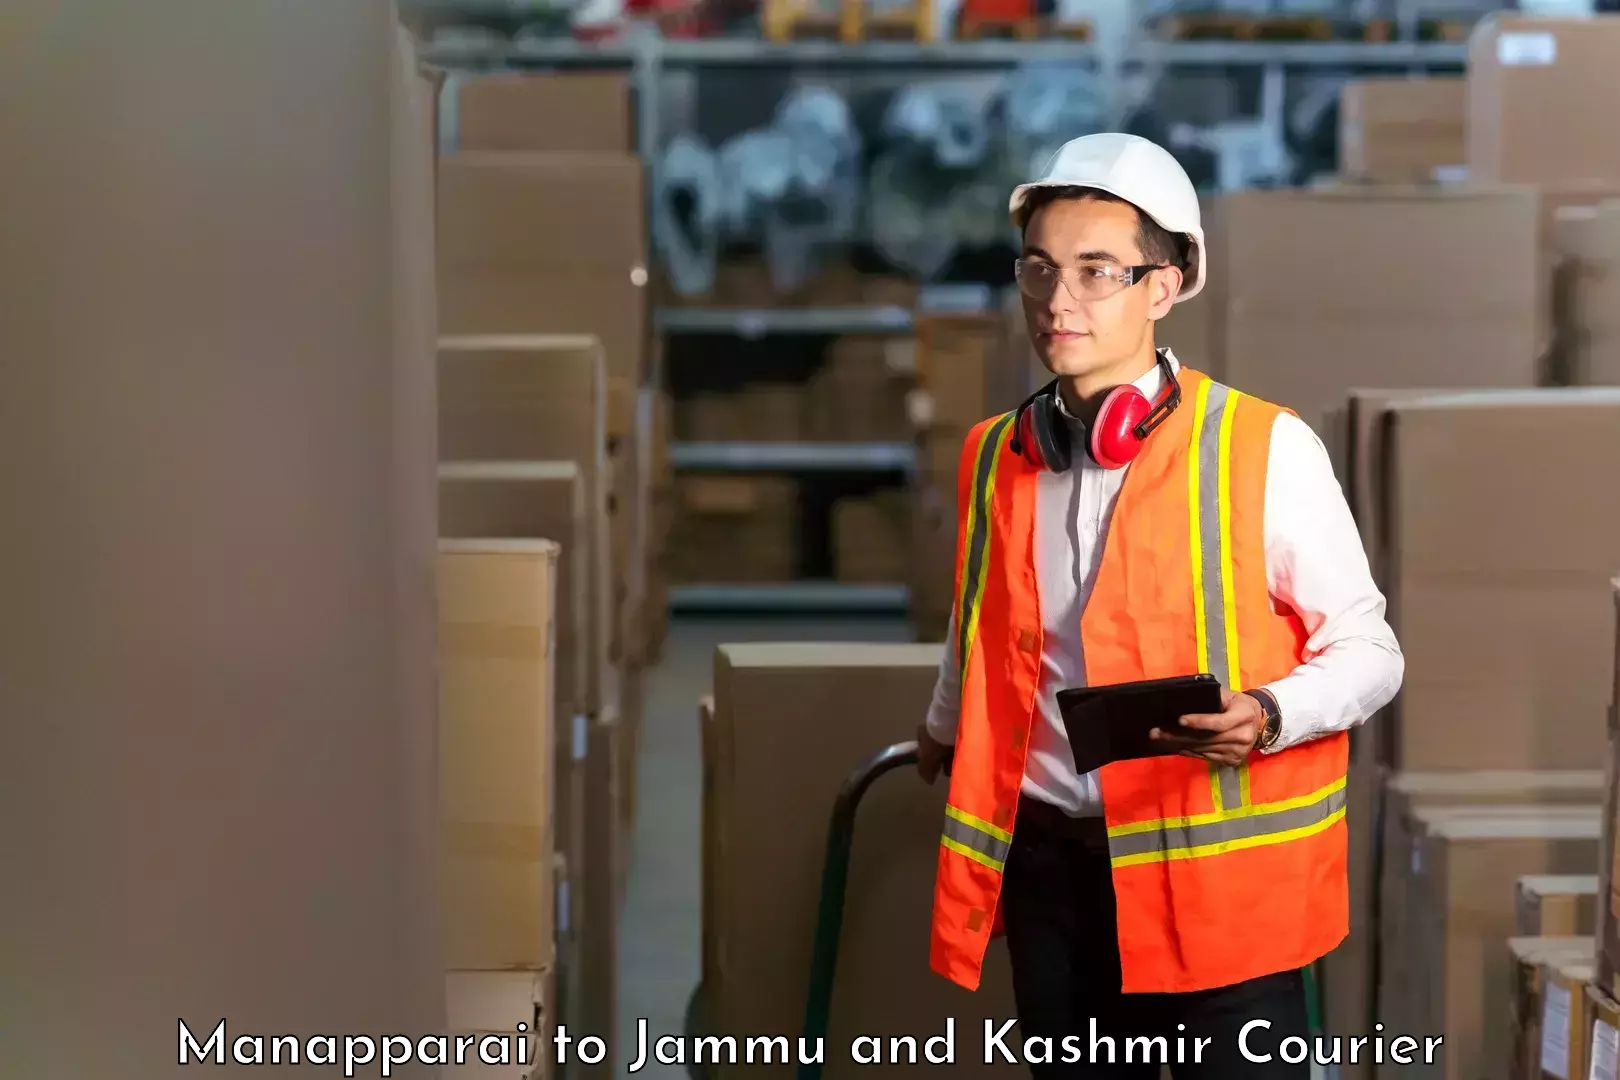 Express logistics Manapparai to Jammu and Kashmir